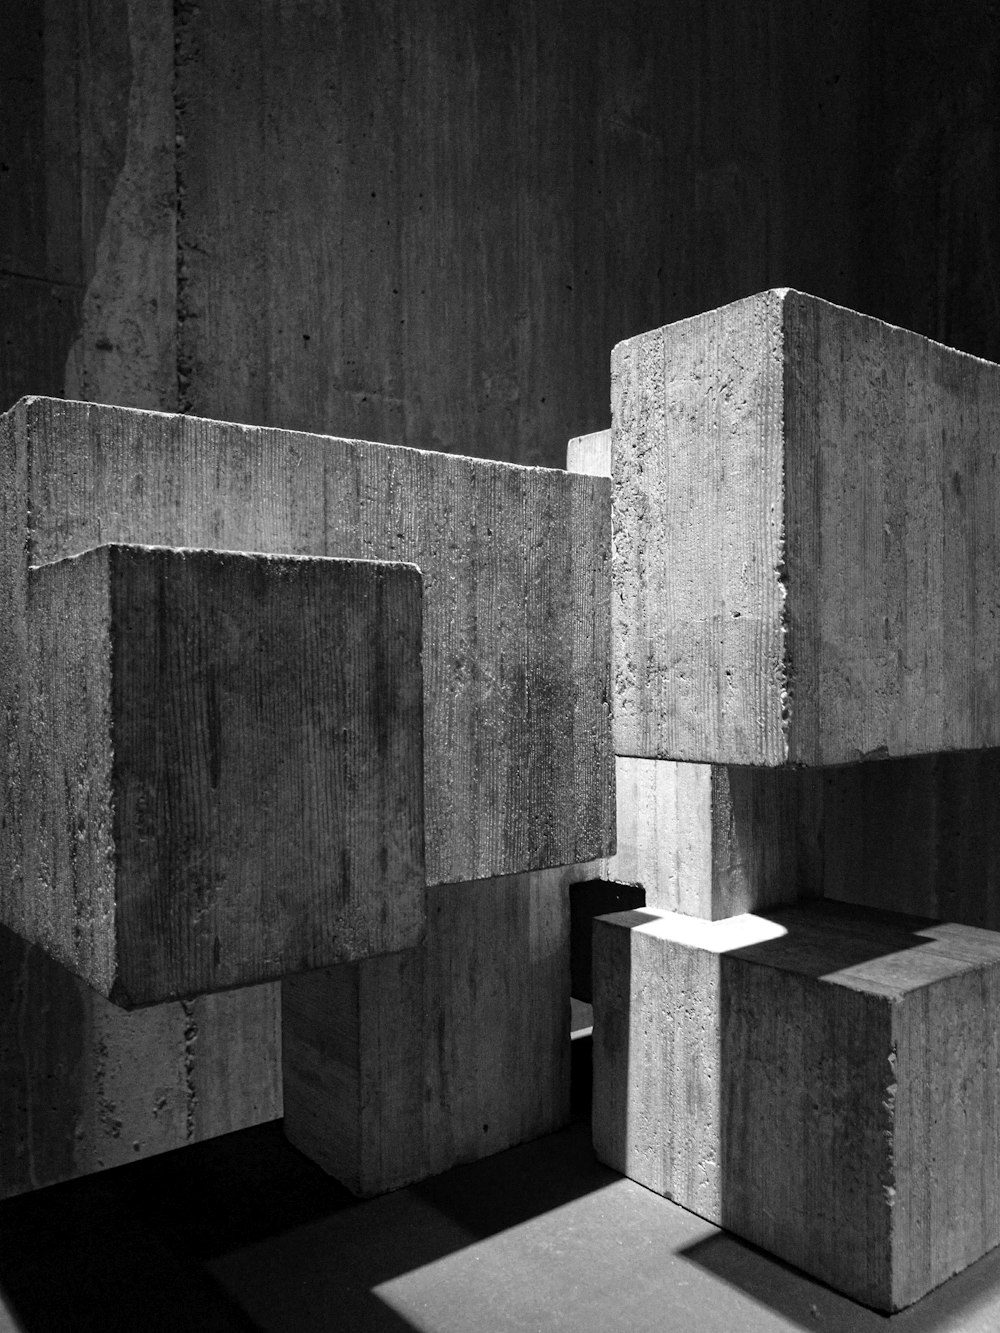 Photographie en niveaux de gris de blocs de béton